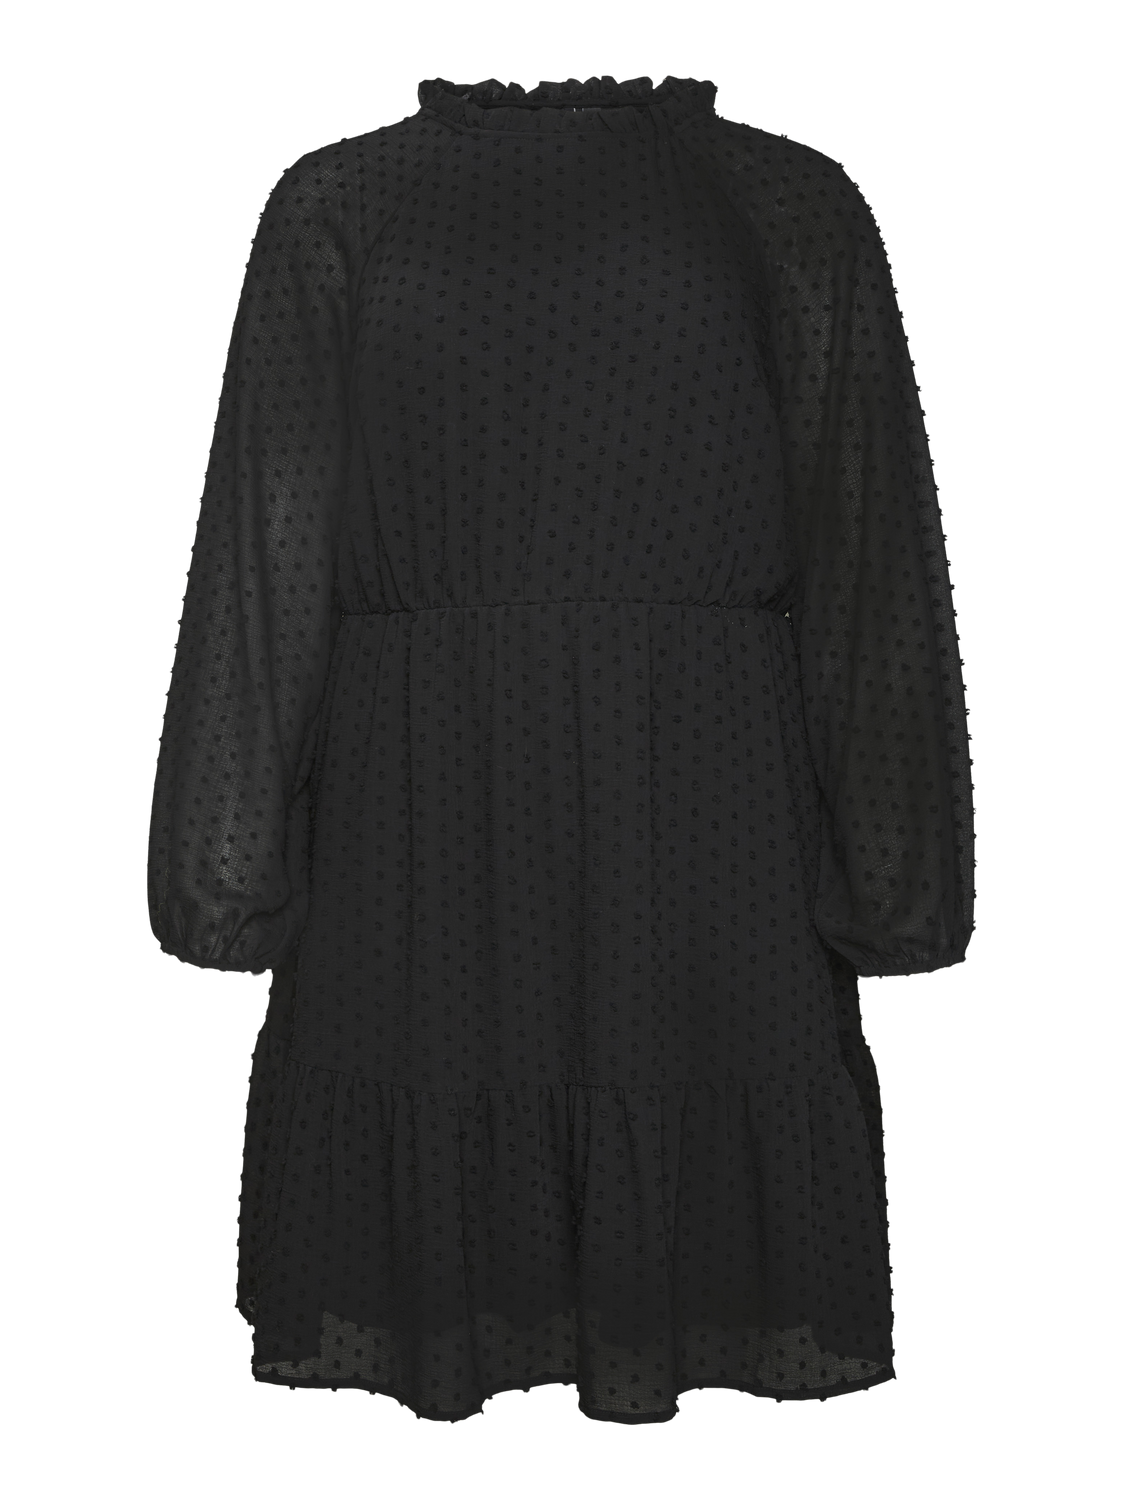 Vero Moda VMEMMA Short dress -Black - 10307979